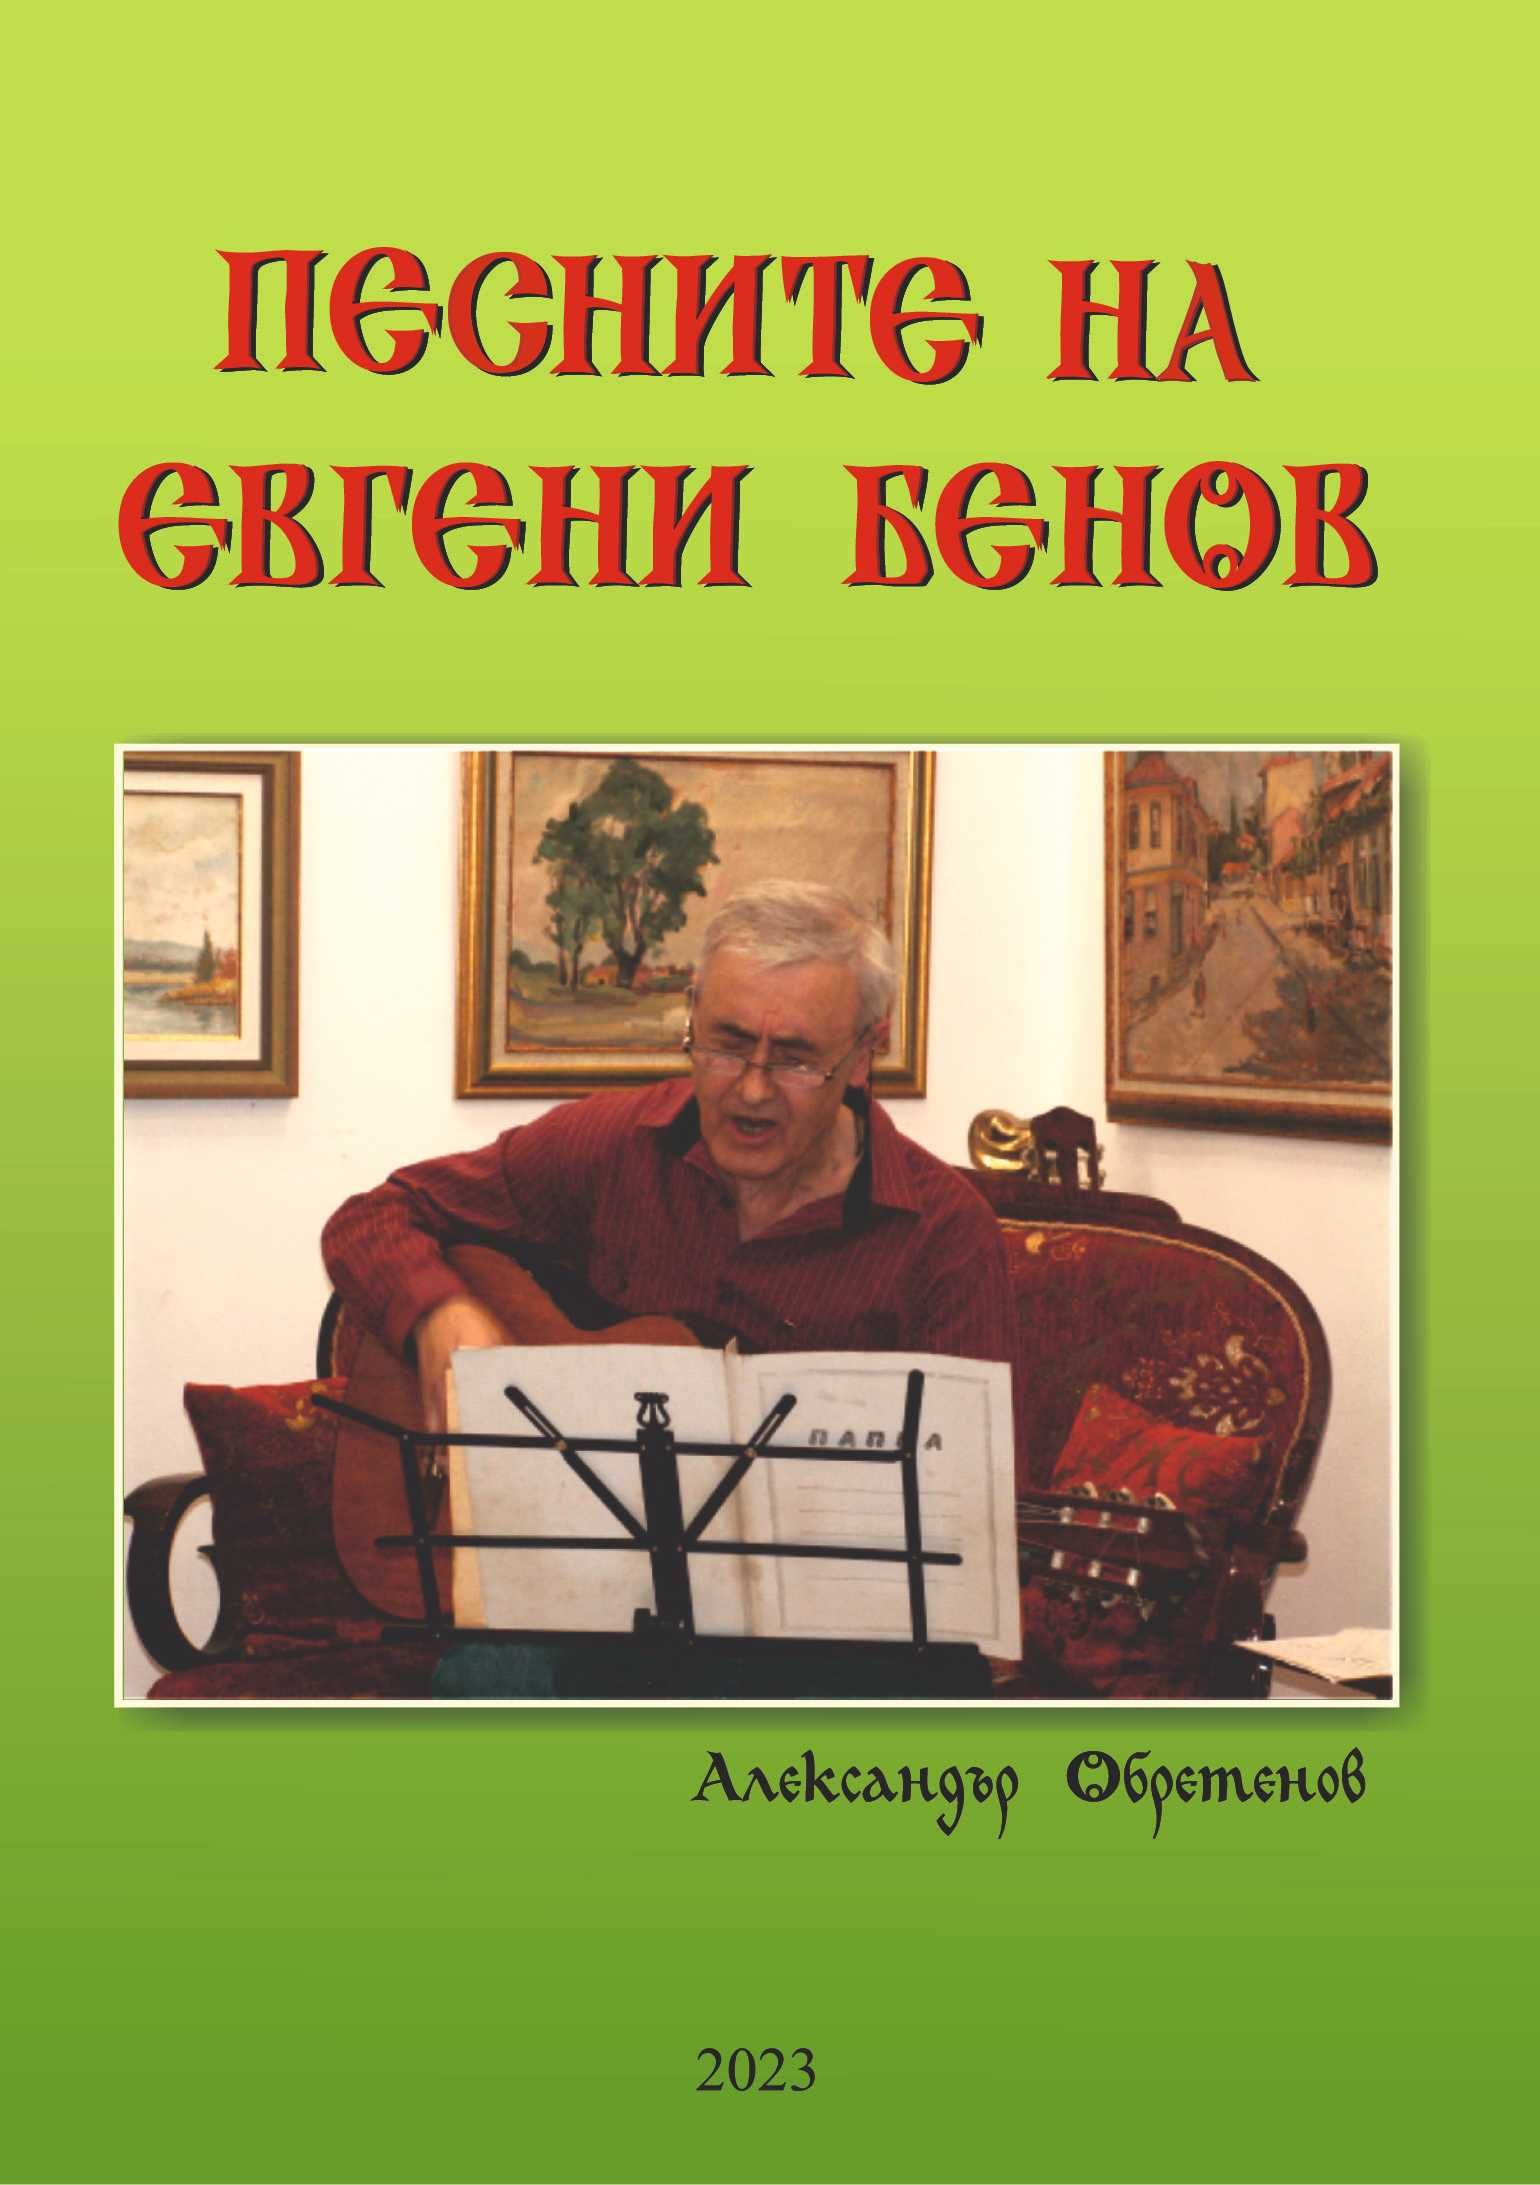 "Песните на Евгени Бенов" - електронна книга на диск